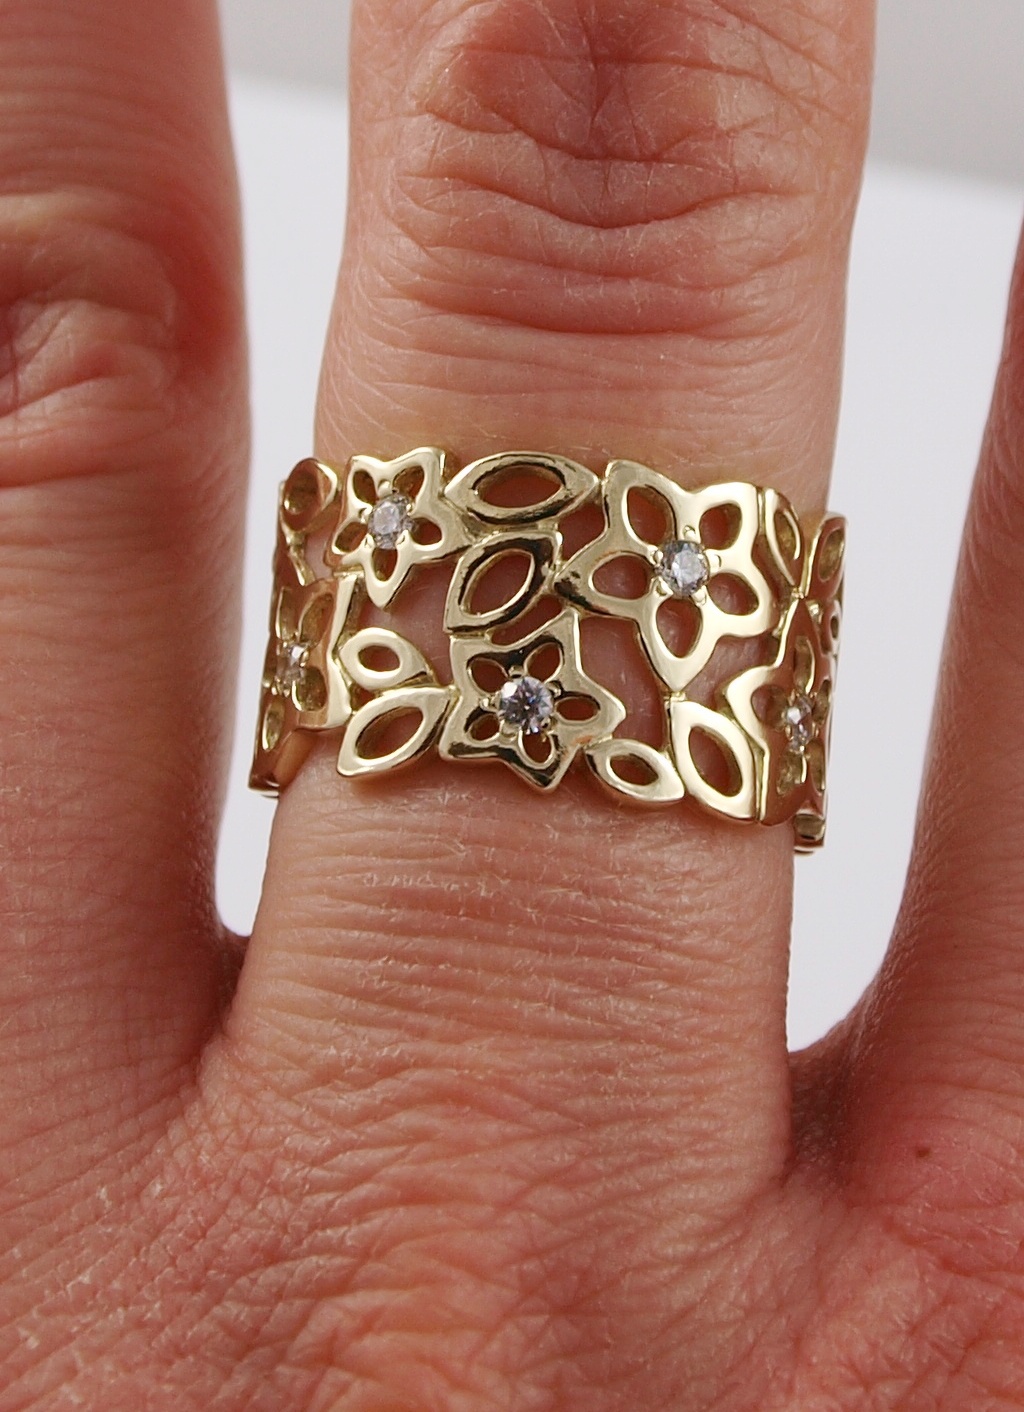 Ажурные золотые кольца. Ажурное кольцо. Ажурное золотое кольцо. Ажурные кольца из золота. Кольцо ажурное золотое широкое.